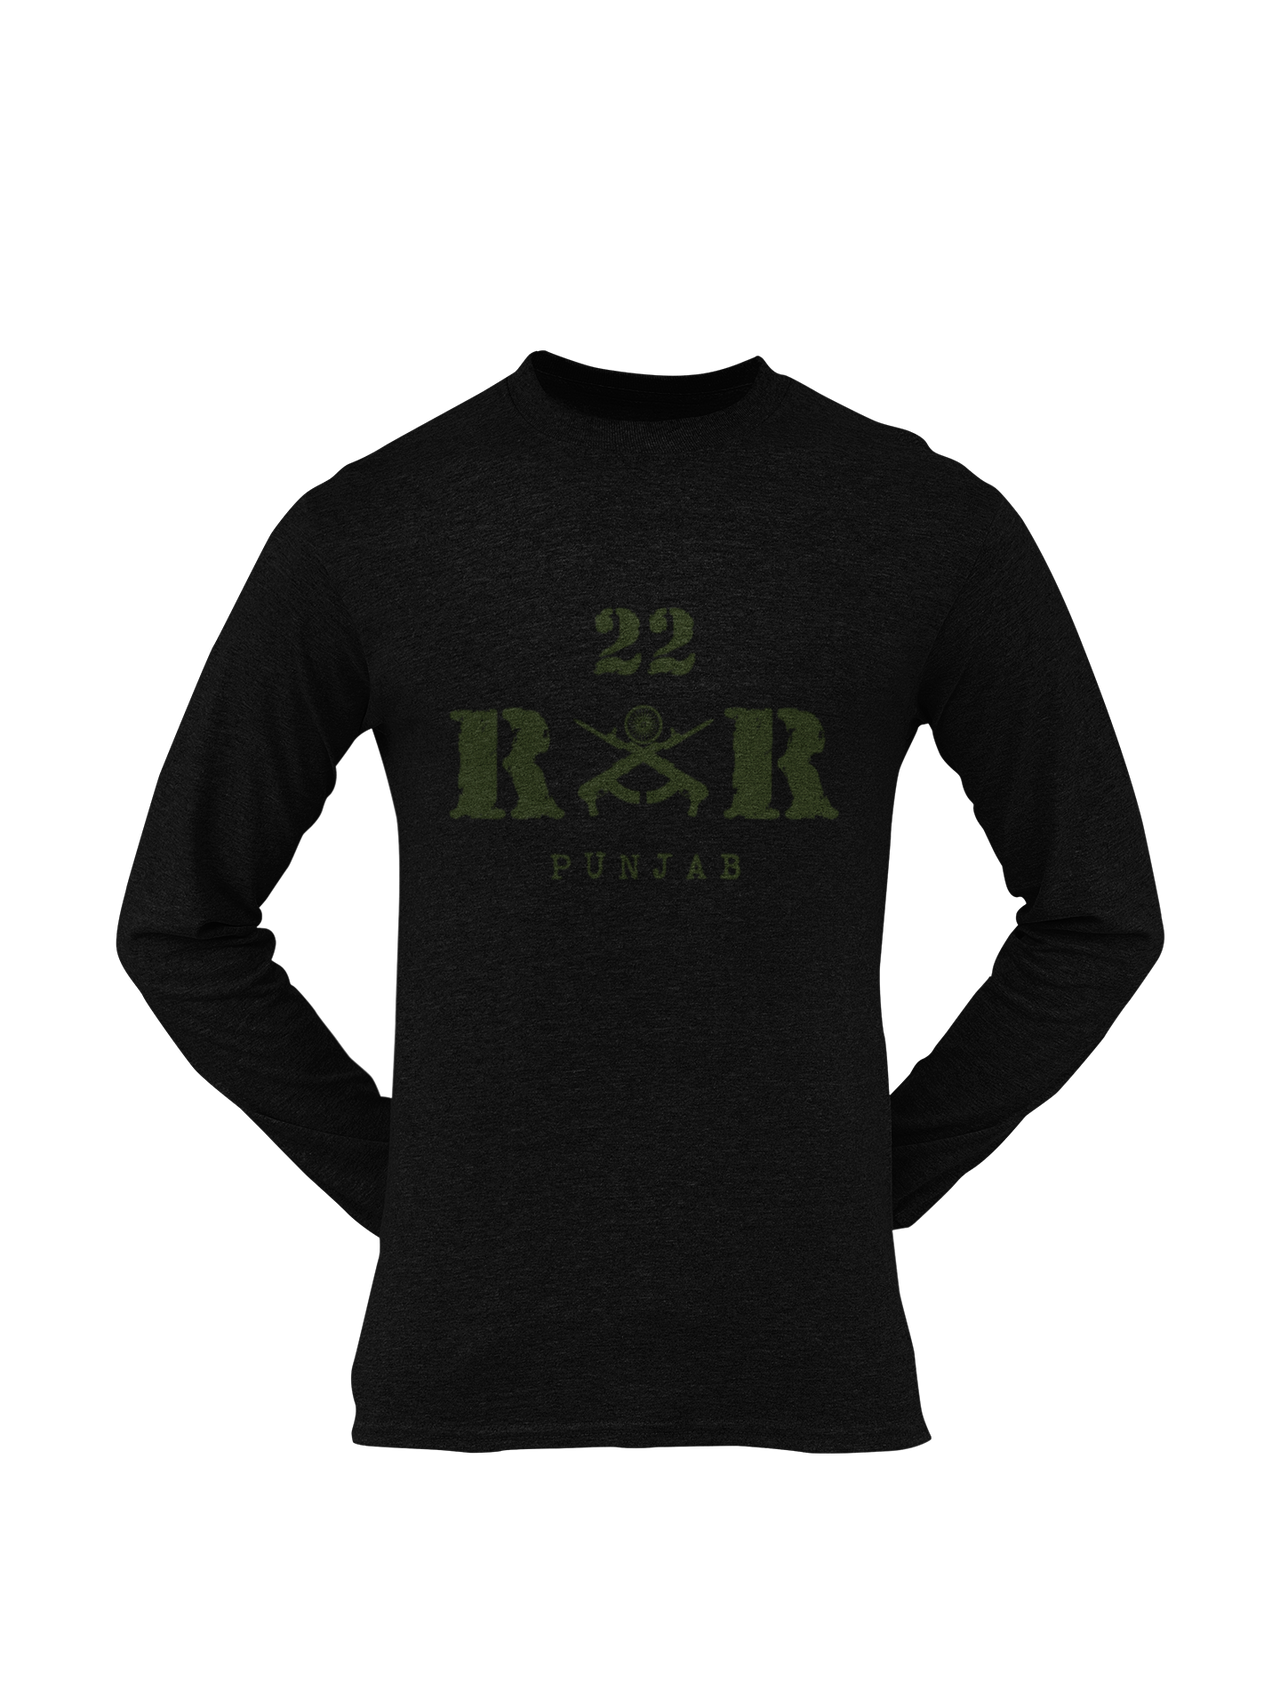 Rashtriya Rifles T-shirt - 22 RR Punjab (Men)